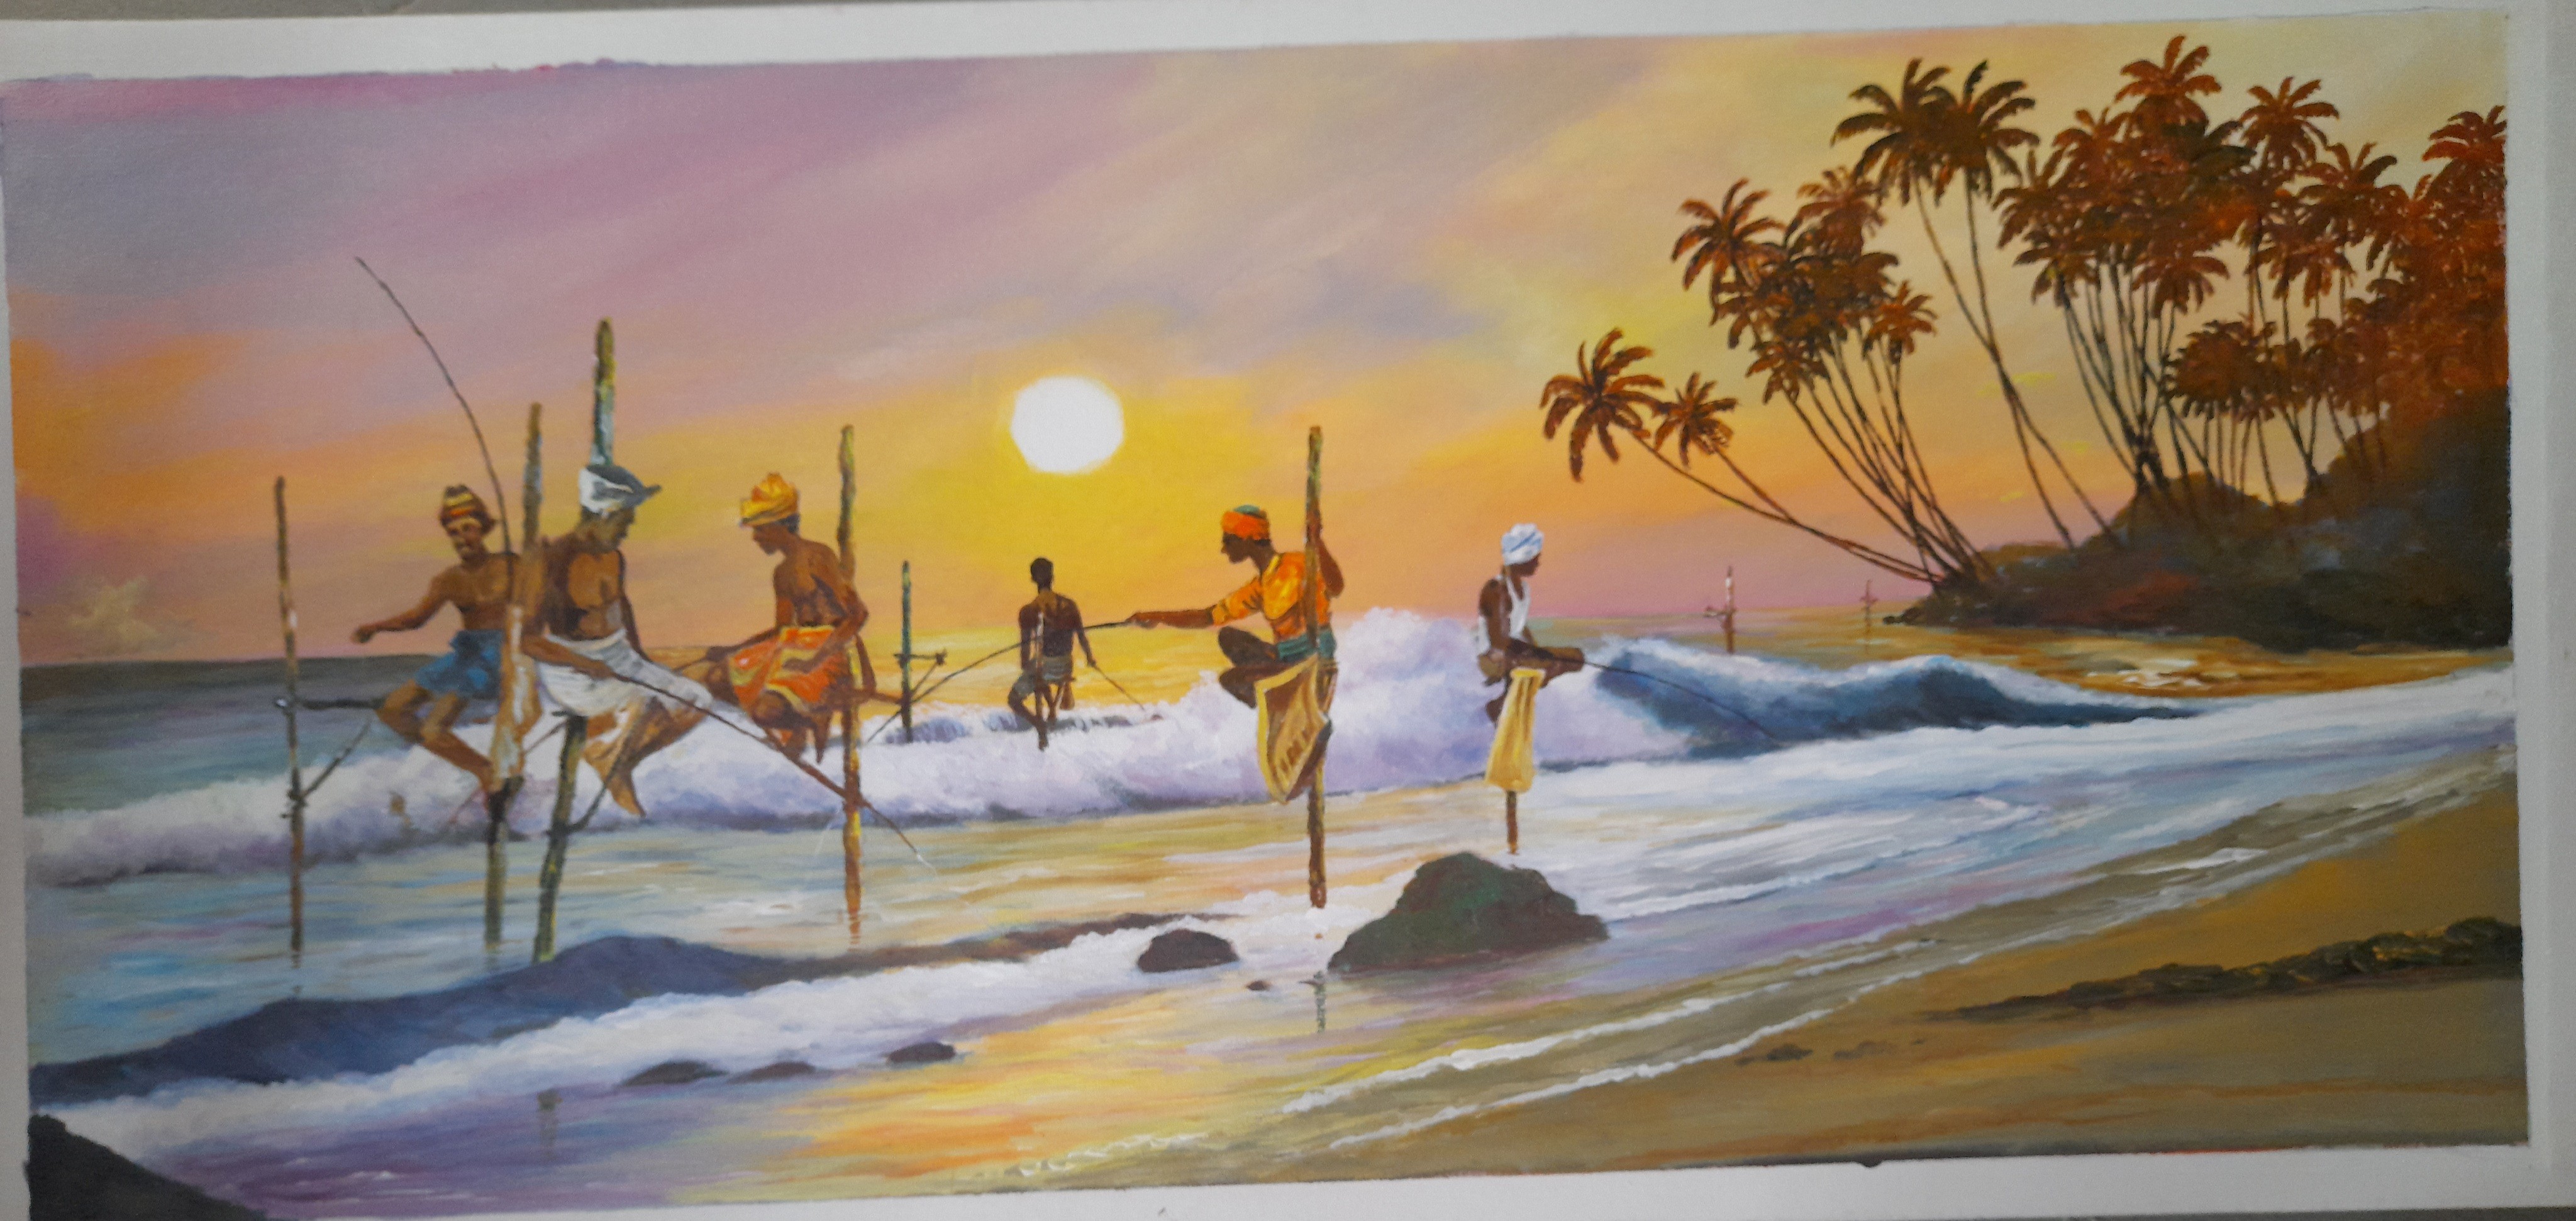 Stilt fishing by Mangala Madanayake